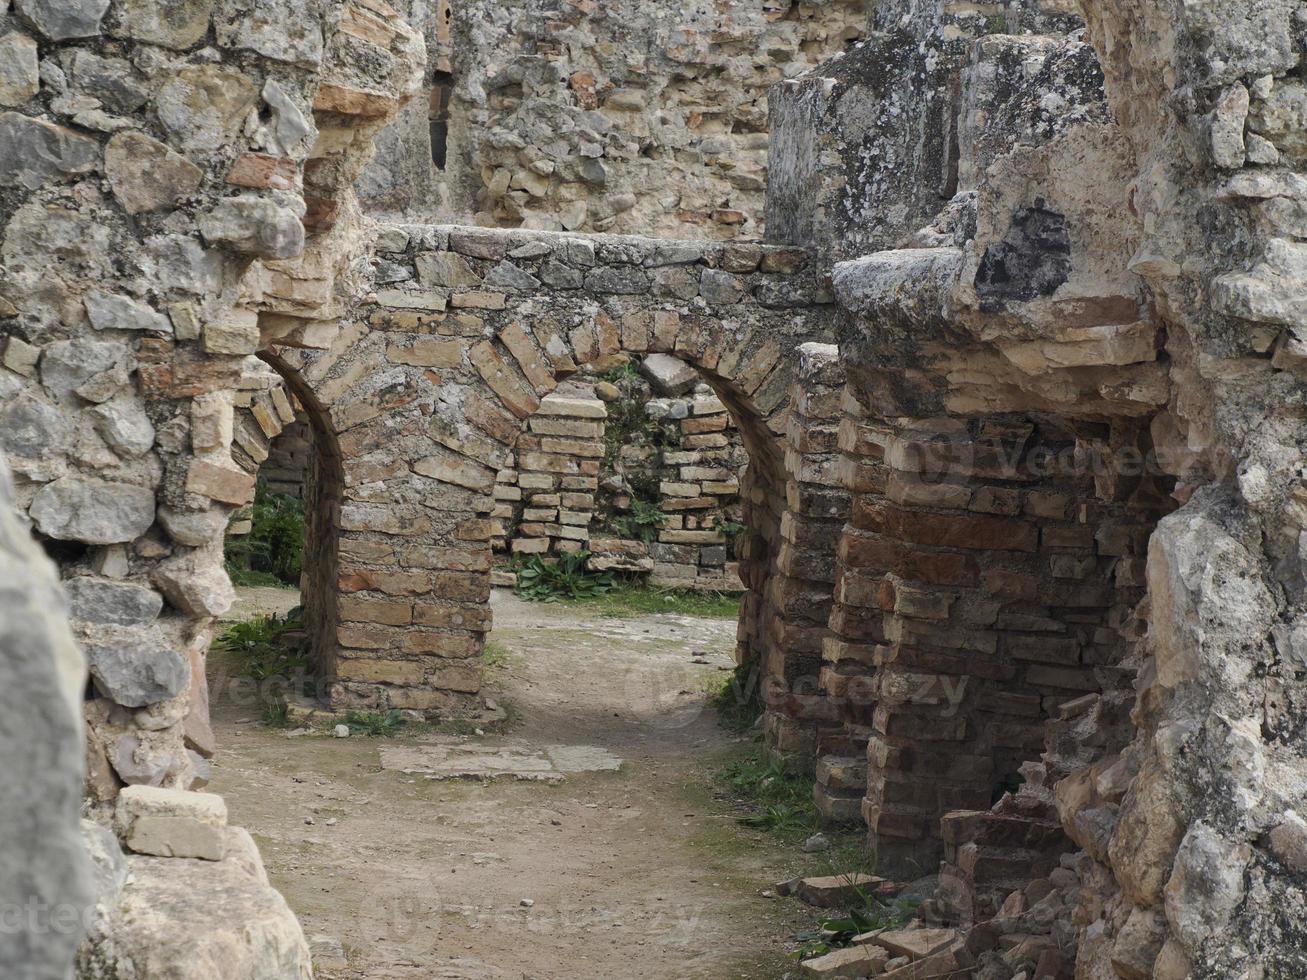 volubilis roman ruiner i marocko- bäst bevarade roman ruiner belägen mellan de kejserlig städer av fez och meknes foto